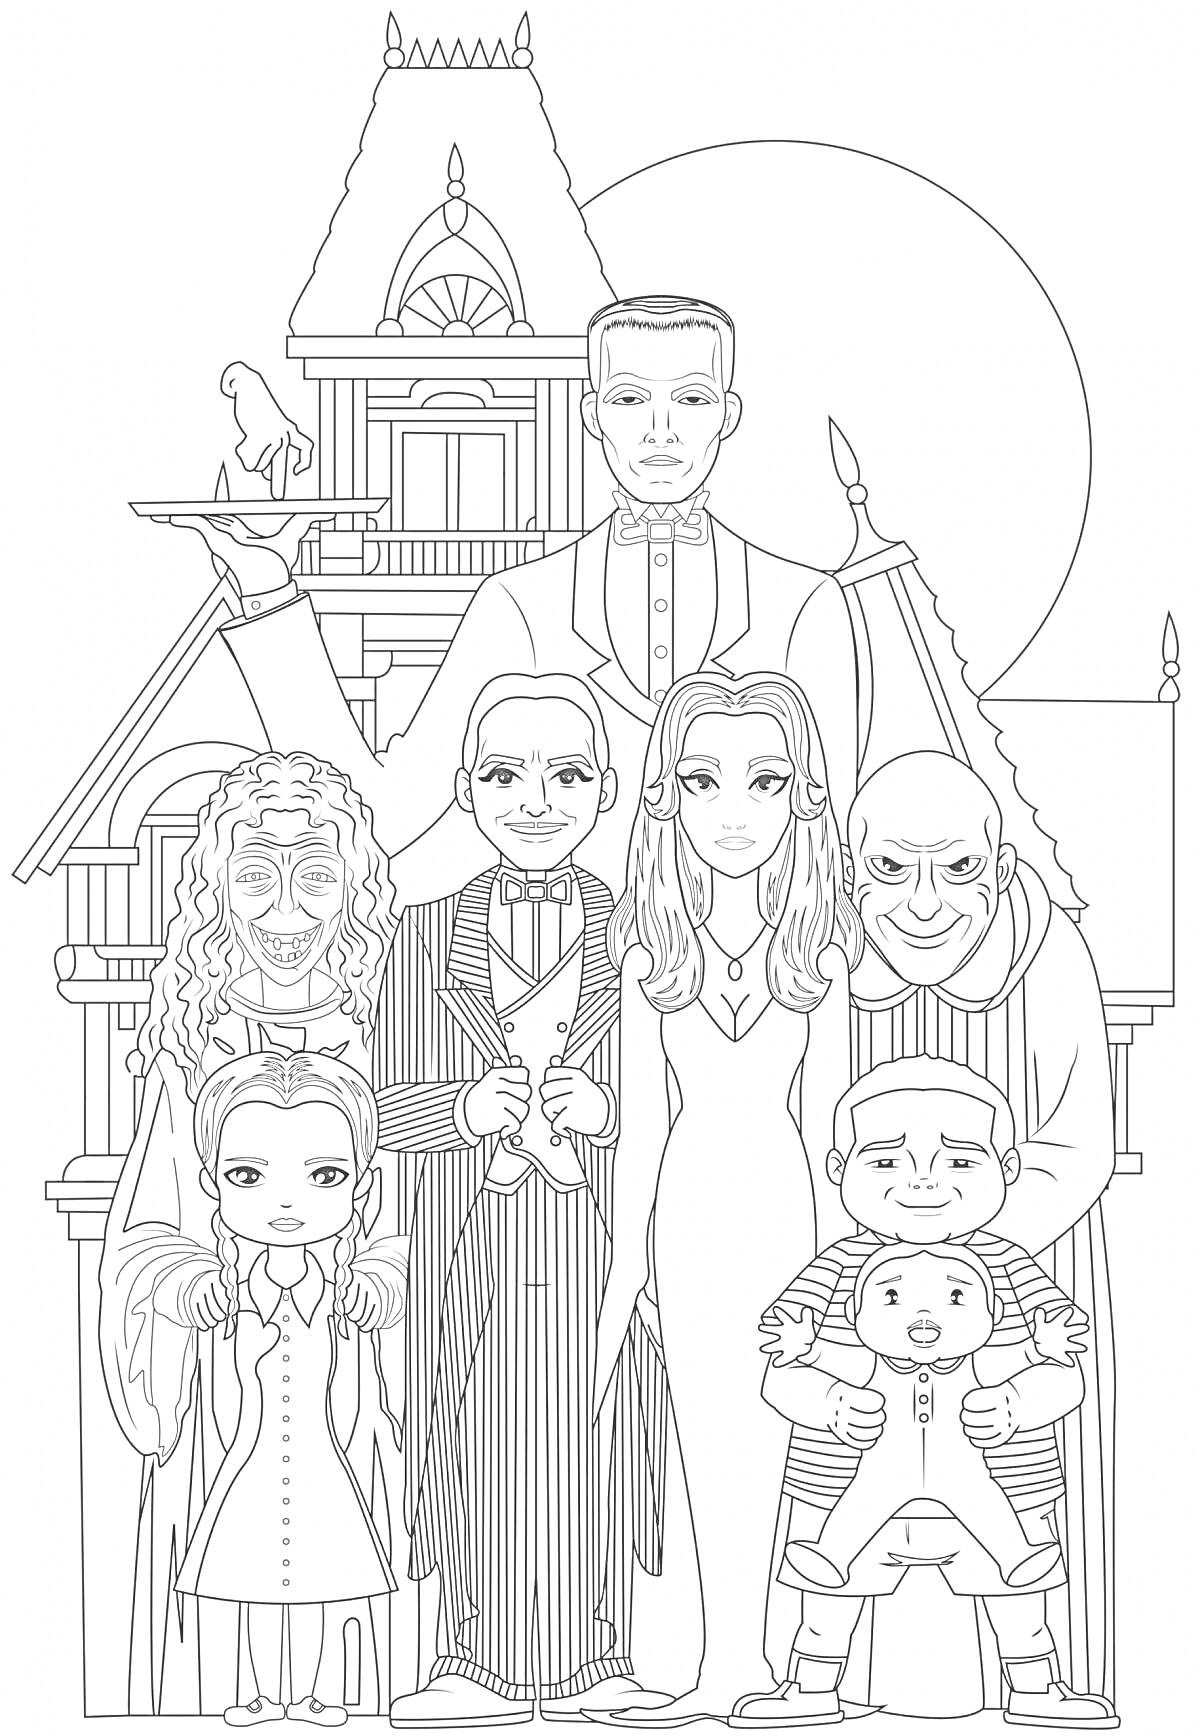 Раскраска Семейка Аддамс перед домом с изображением всех членов семьи и характерными элементами